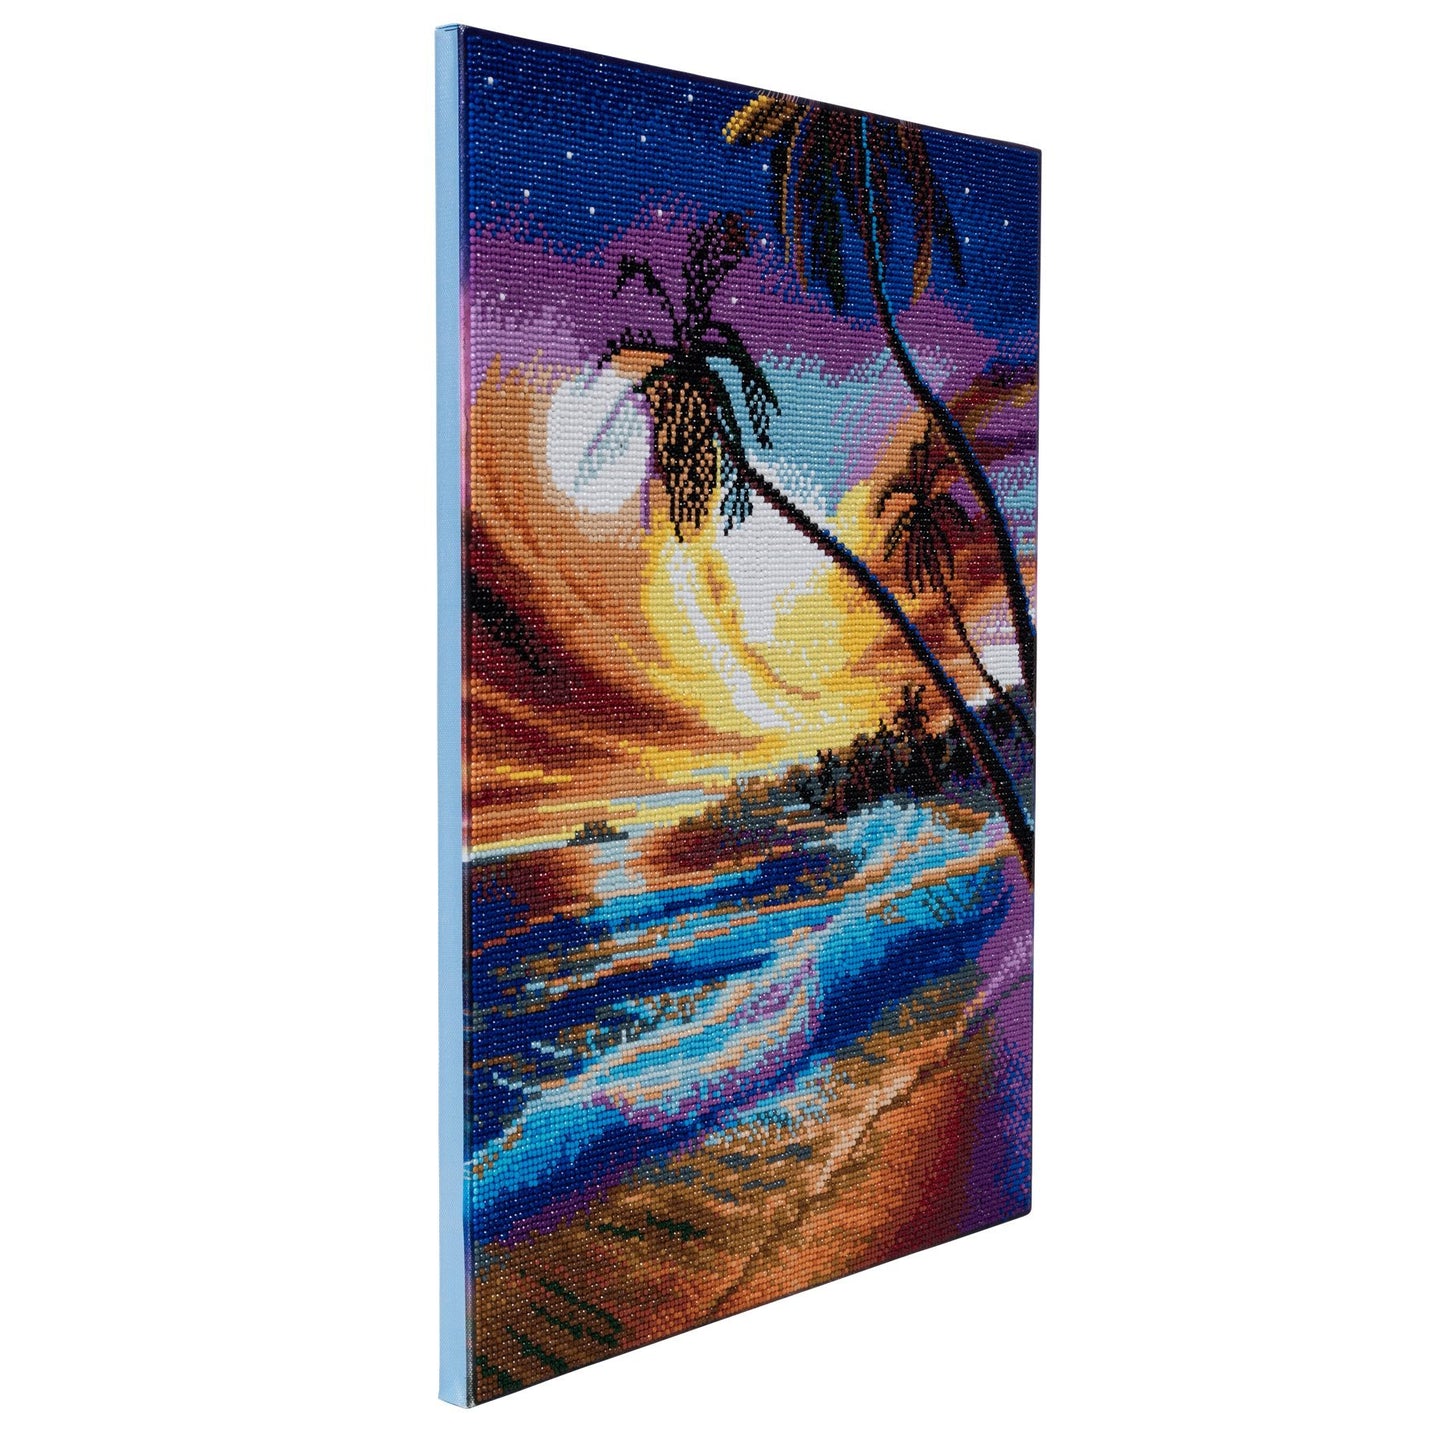 CAK-A47: "Tropical Beach" Framed Crystal Art Kit, 40 x 50cm